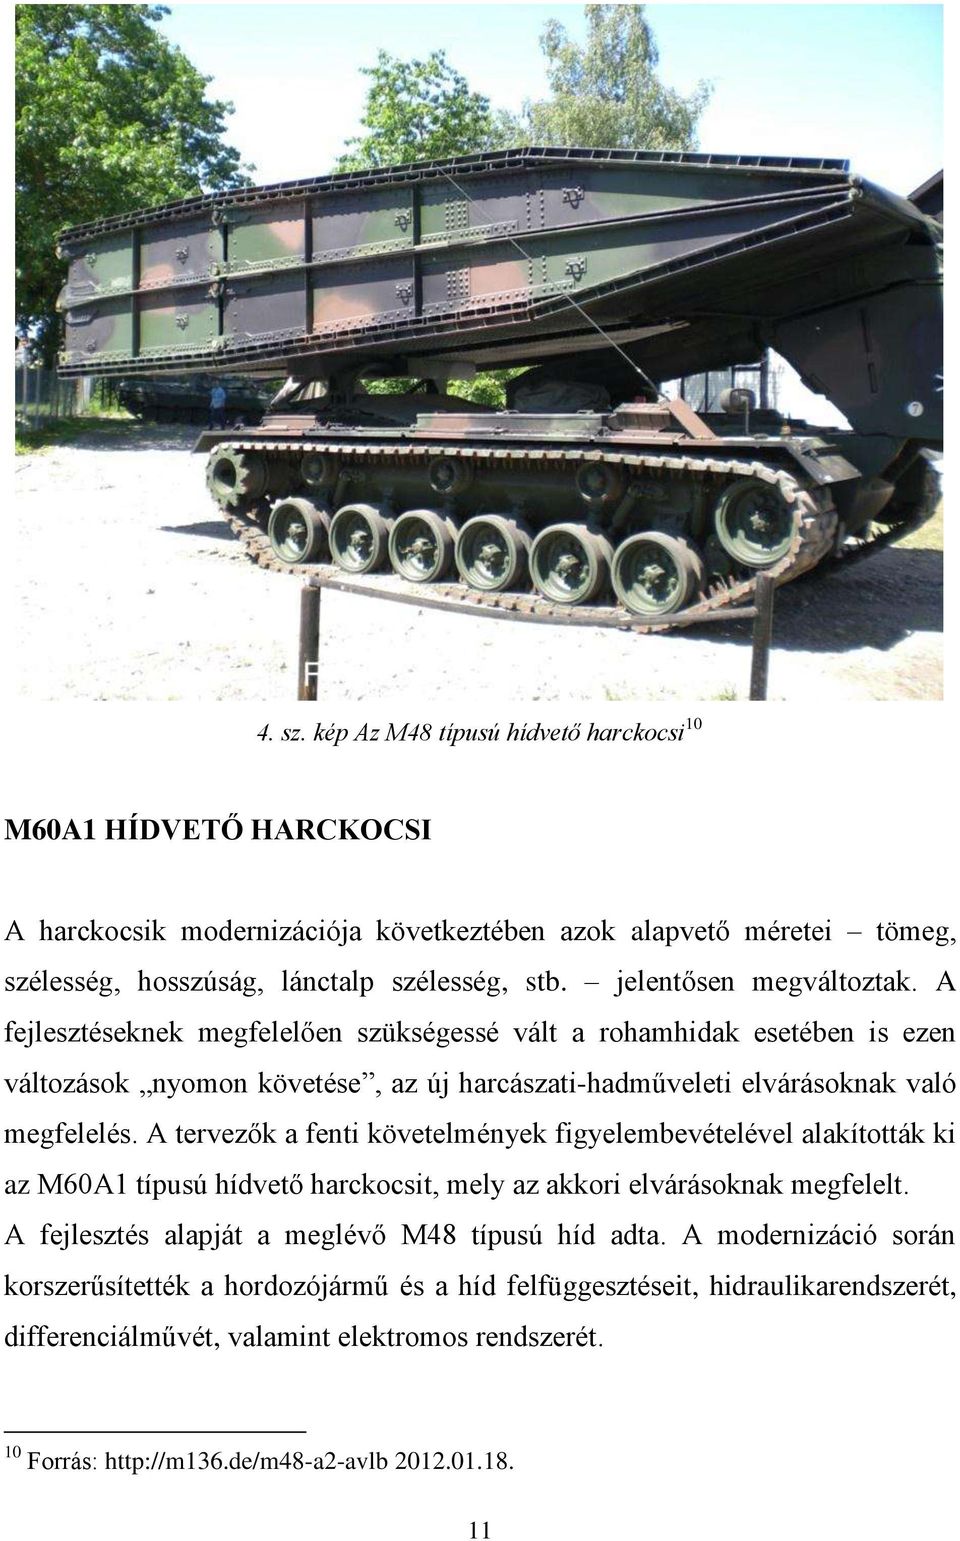 A tervezők a fenti követelmények figyelembevételével alakították ki az M60A1 típusú hídvető harckocsit, mely az akkori elvárásoknak megfelelt. A fejlesztés alapját a meglévő M48 típusú híd adta.